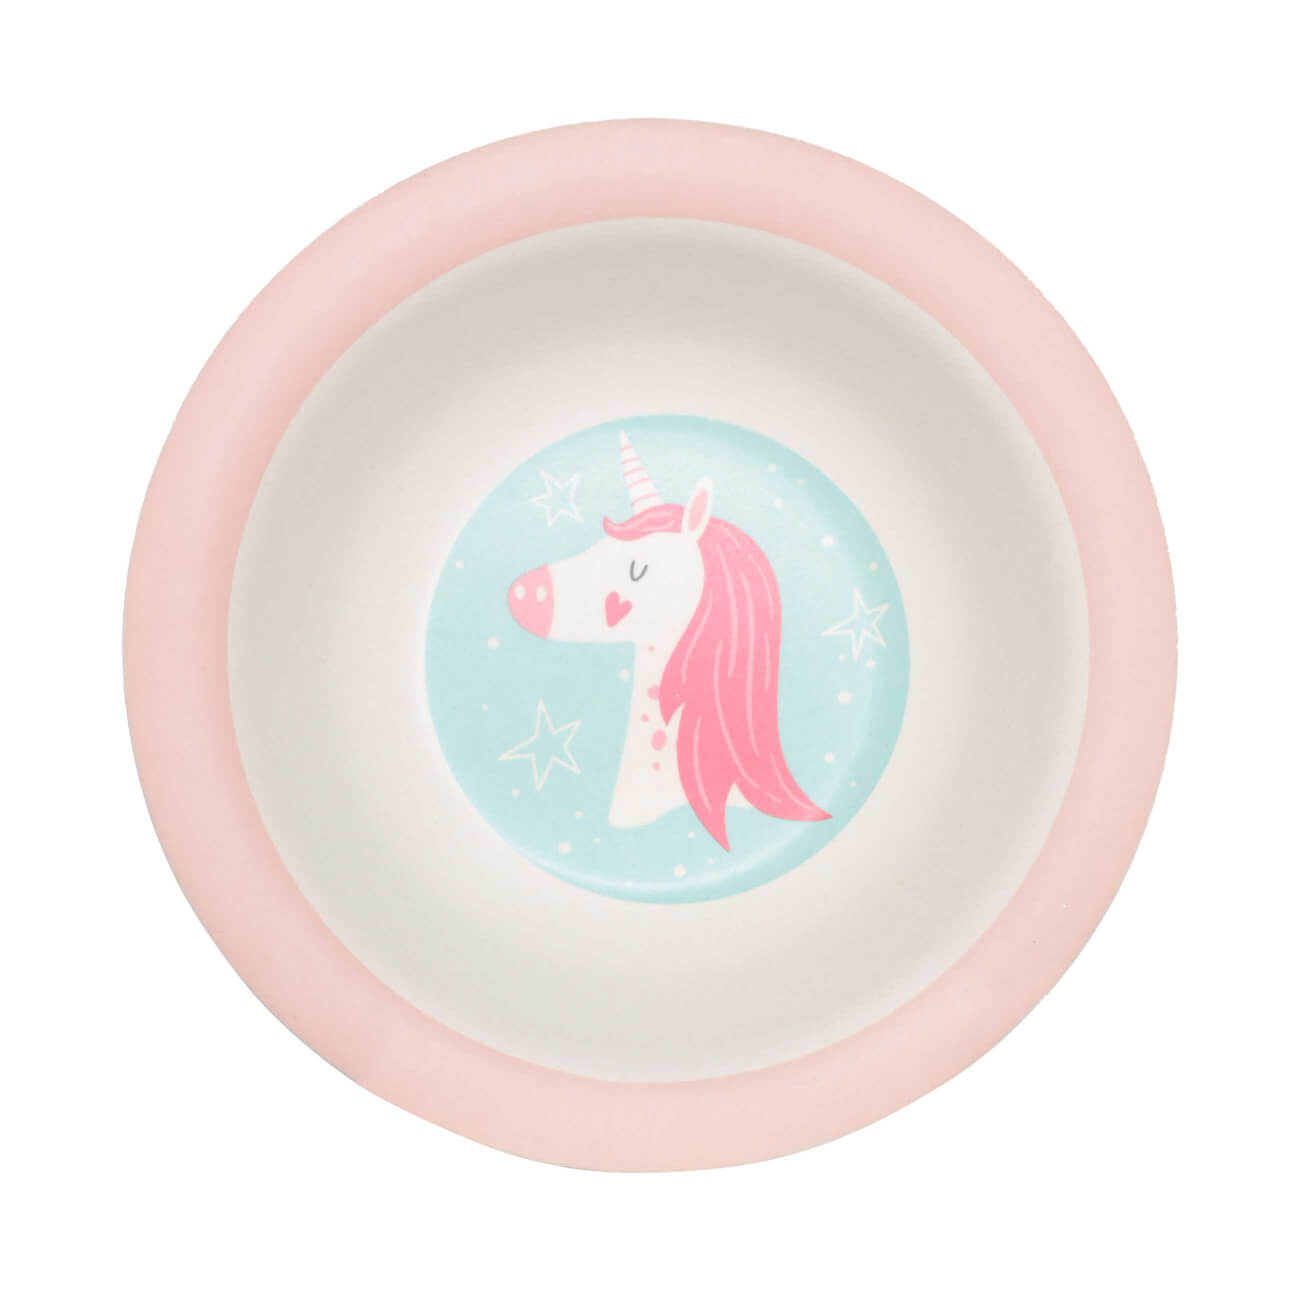 Тарелка суповая, детская, 15 см, бамбук, розово-мятная, Единорог и звезды, Unicorn тарелка обеденная детская 18 см 3 отд бамбук квадратная розово мятная единорог unicorn